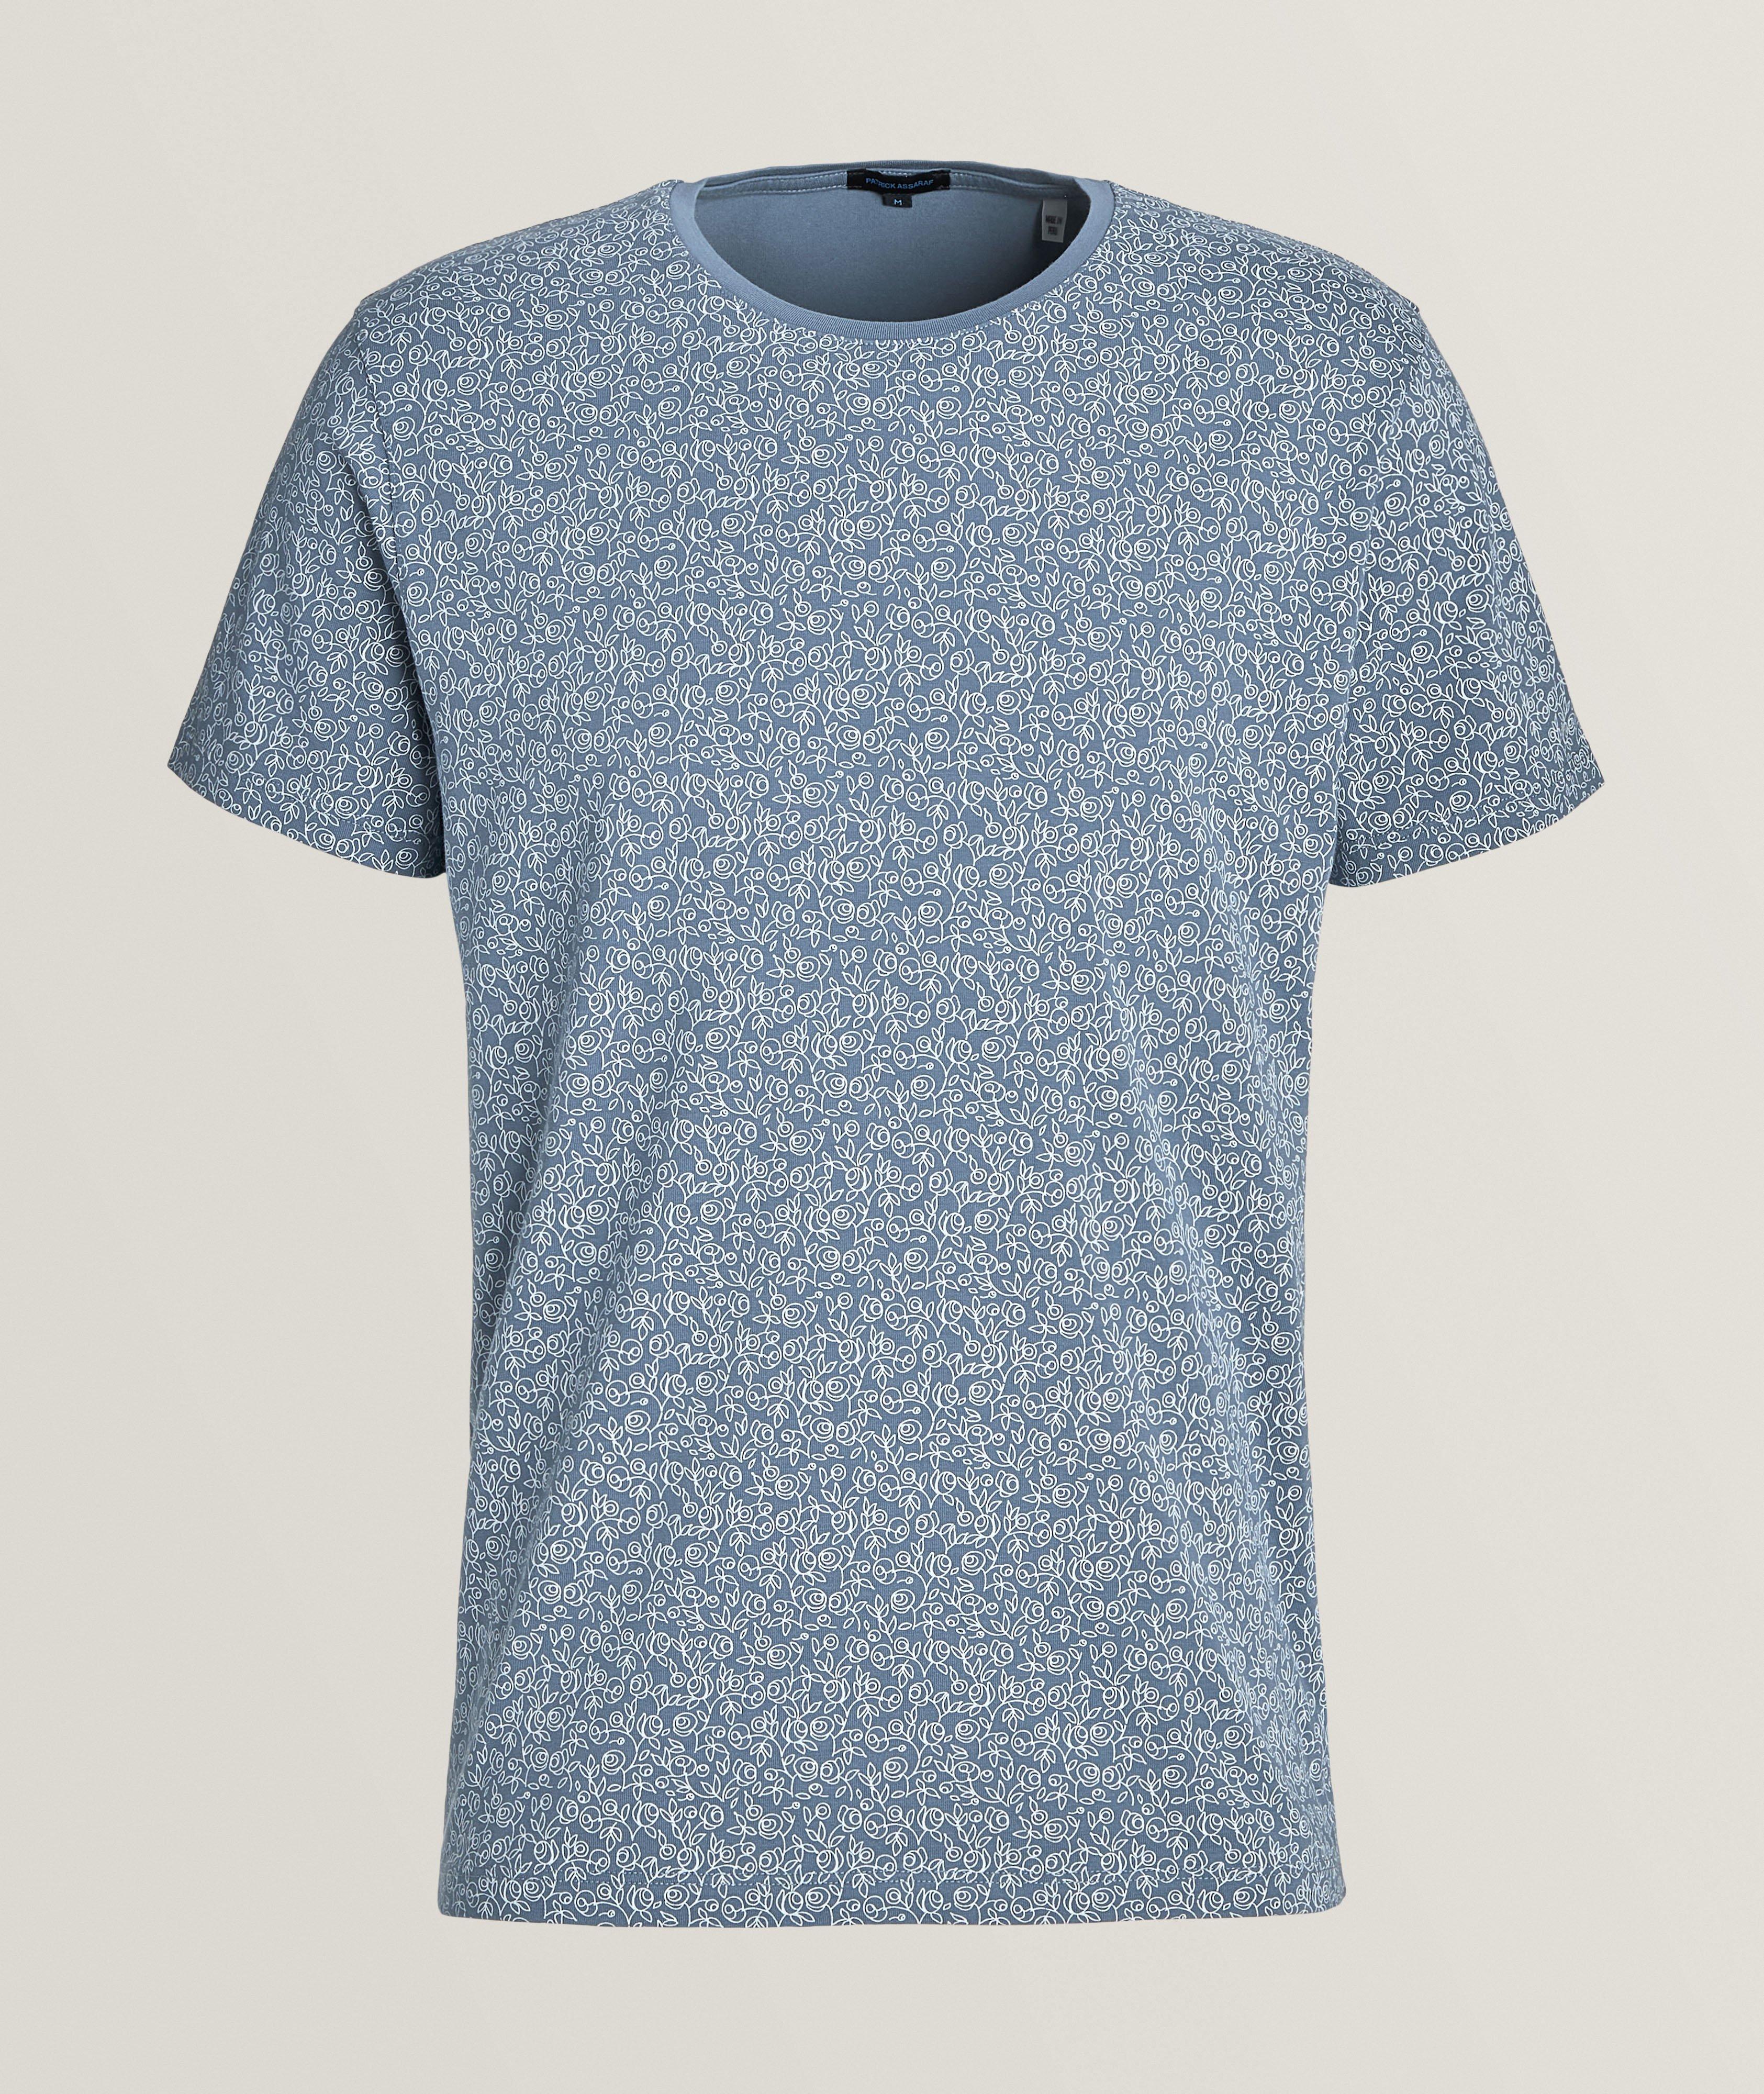 T-shirt en coton pima extensible à motif floral image 0